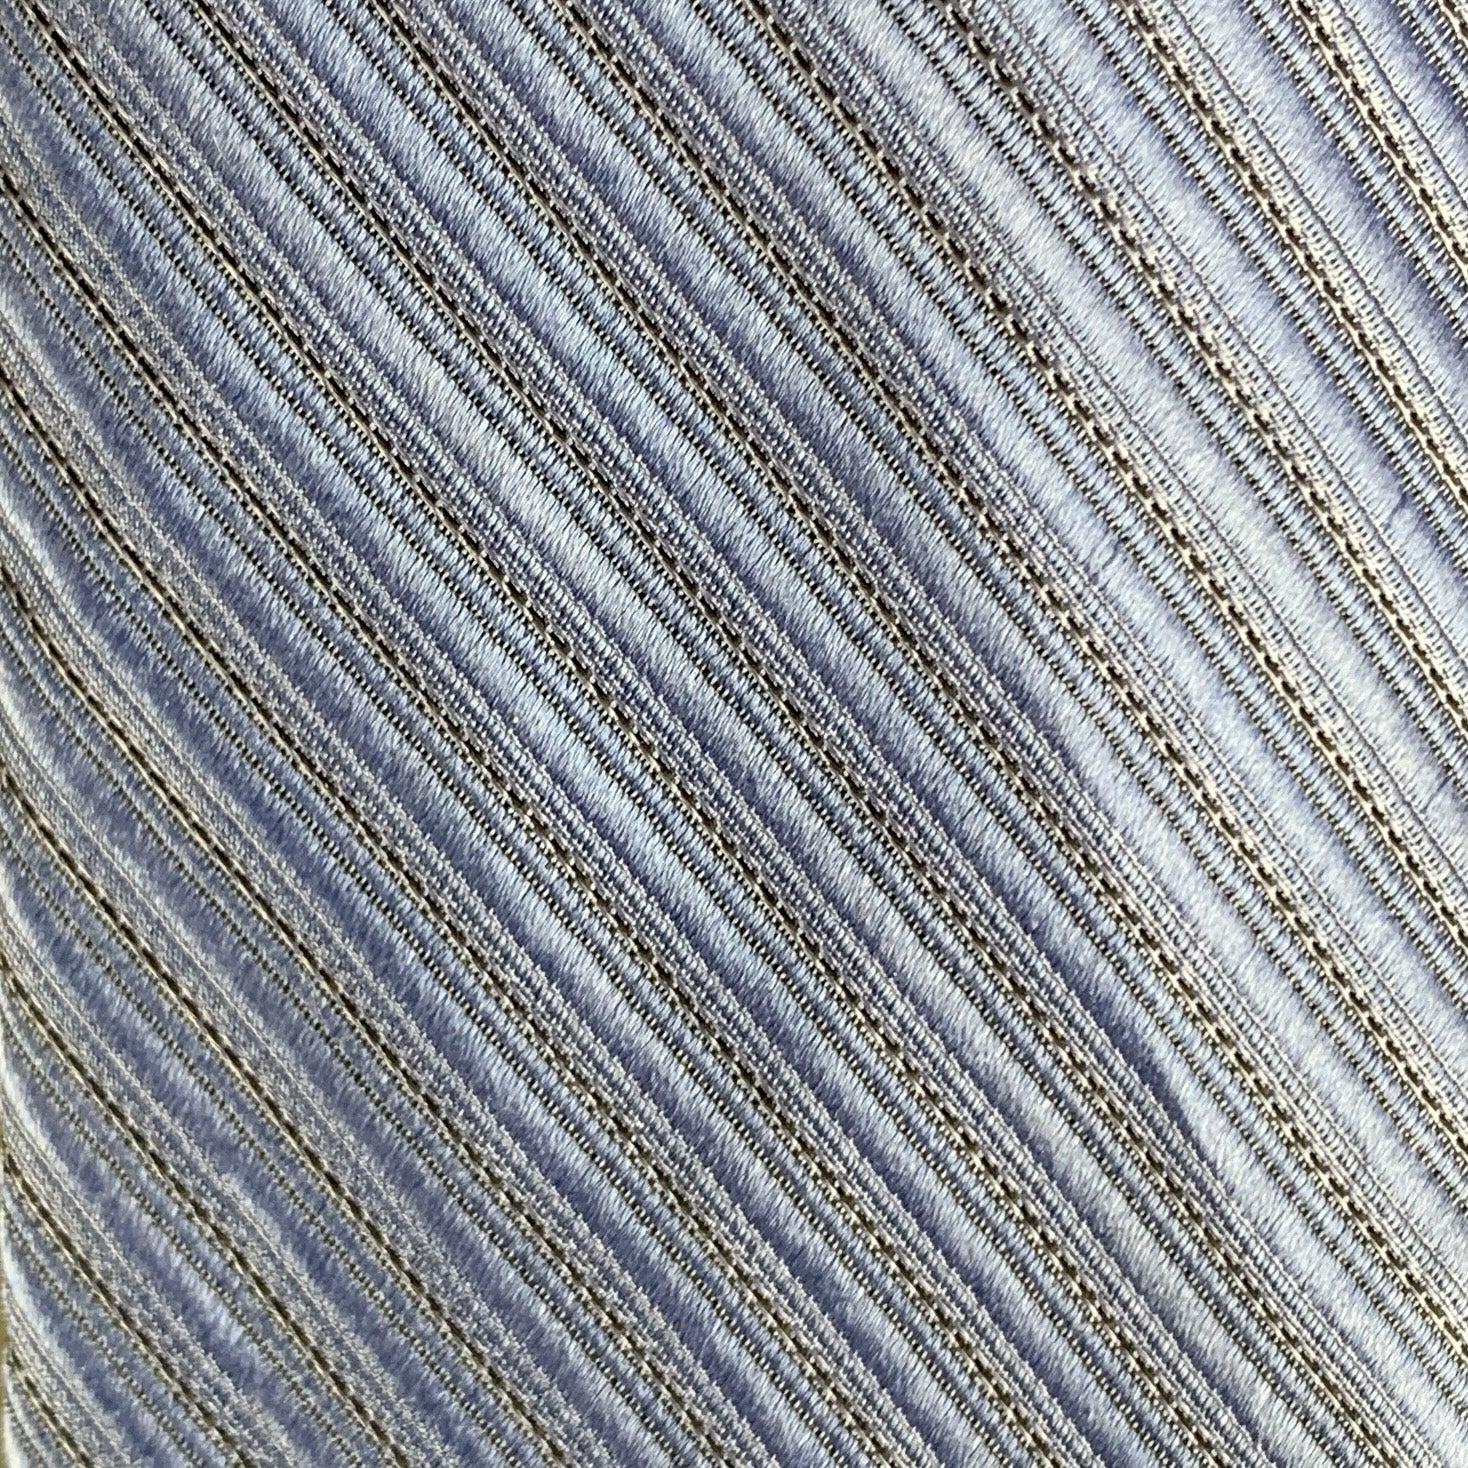 La cravate CALVIN KLEIN est en soie mélangée bleue avec une texture diagonale sur toute sa surface.
Très bon état d'origine.
 

Mesures : 
  Largeur : 3 pouces Longueur : 58 pouces 
  
  
 
Référence : 123673
Catégorie : Cravate
Plus de détails
   